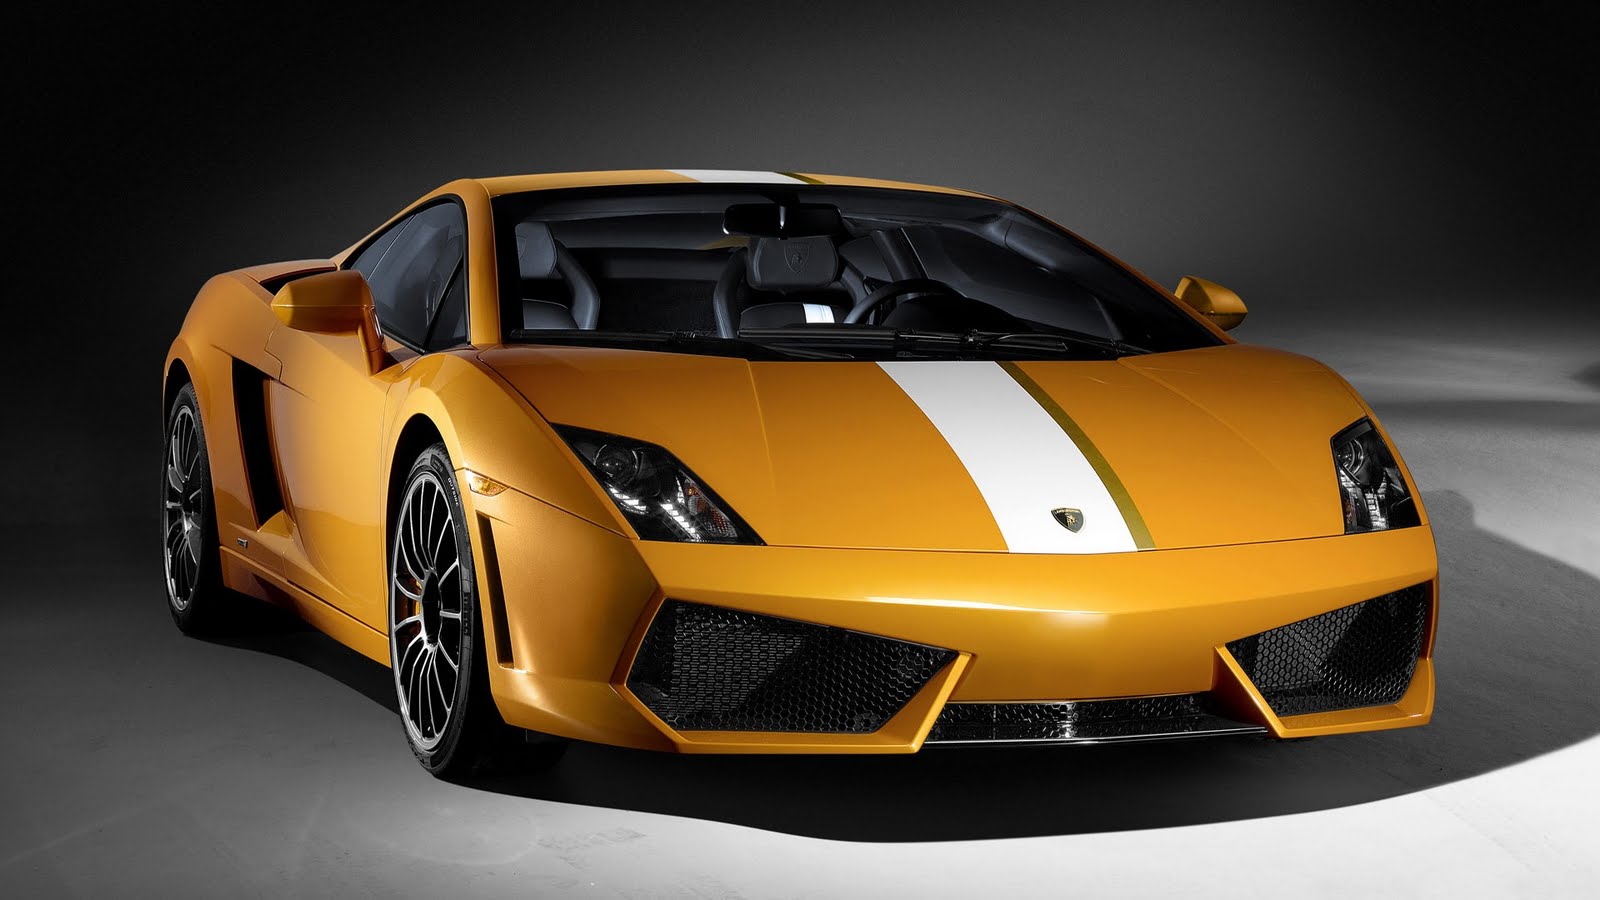 Desktop 1080p Car Wallpapers Download - 2009 Lamborghini Gallardo Lp550 2 Valentino Balboni - HD Wallpaper 